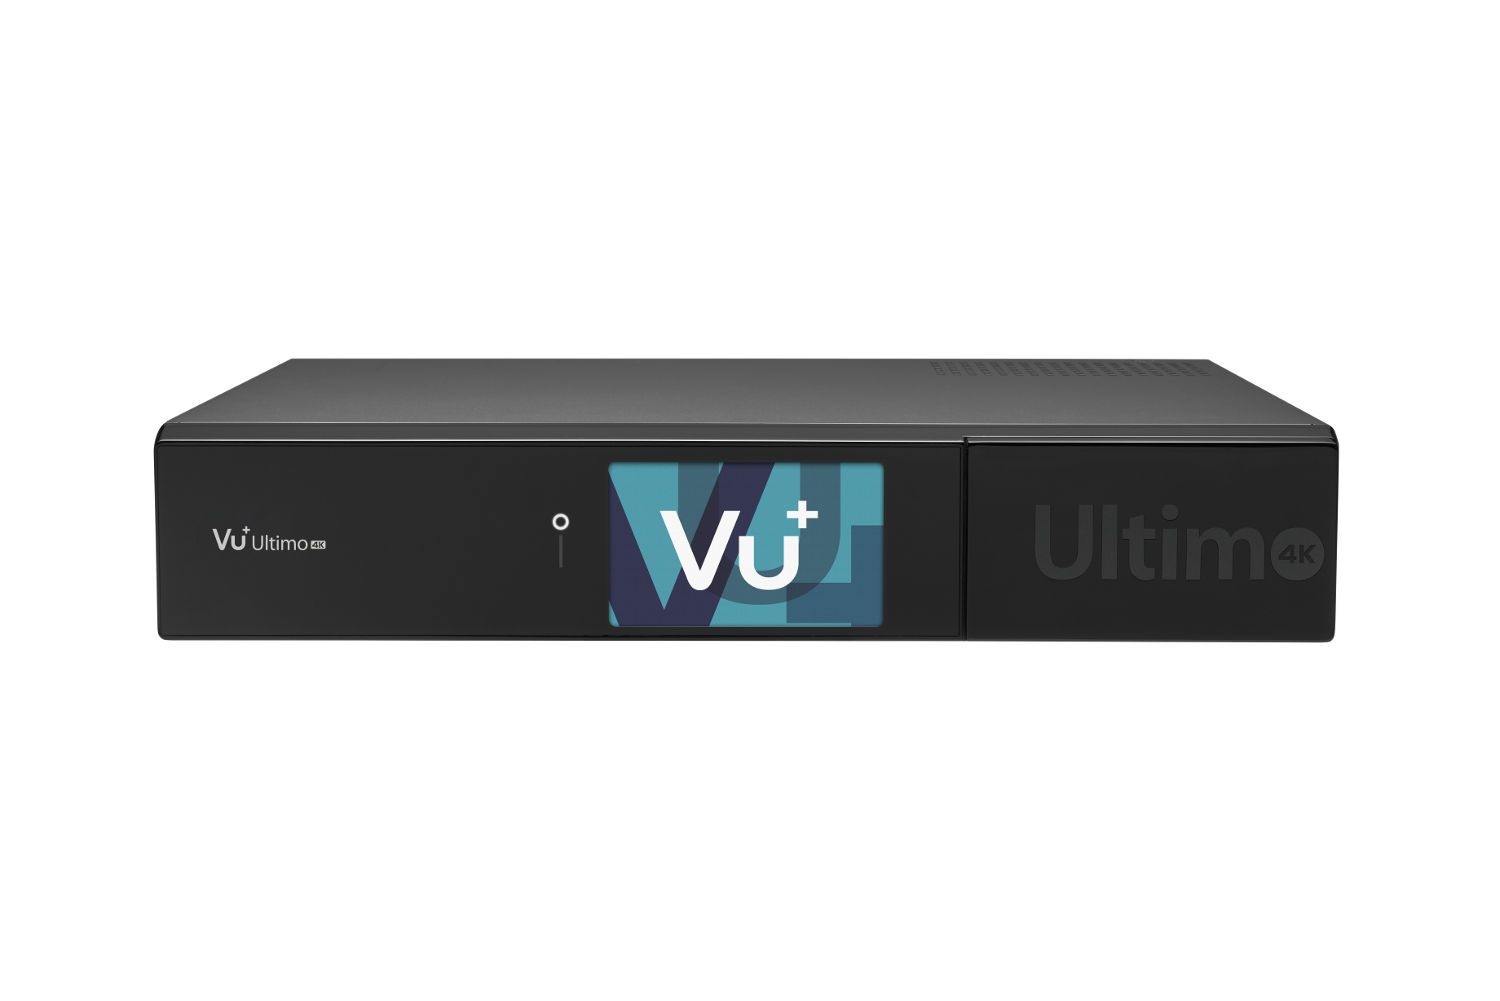 VU+ Ultimo 4K 1x DVB-C FBC Tuner 1 TB HDD Linux Receiver UHD 2160p